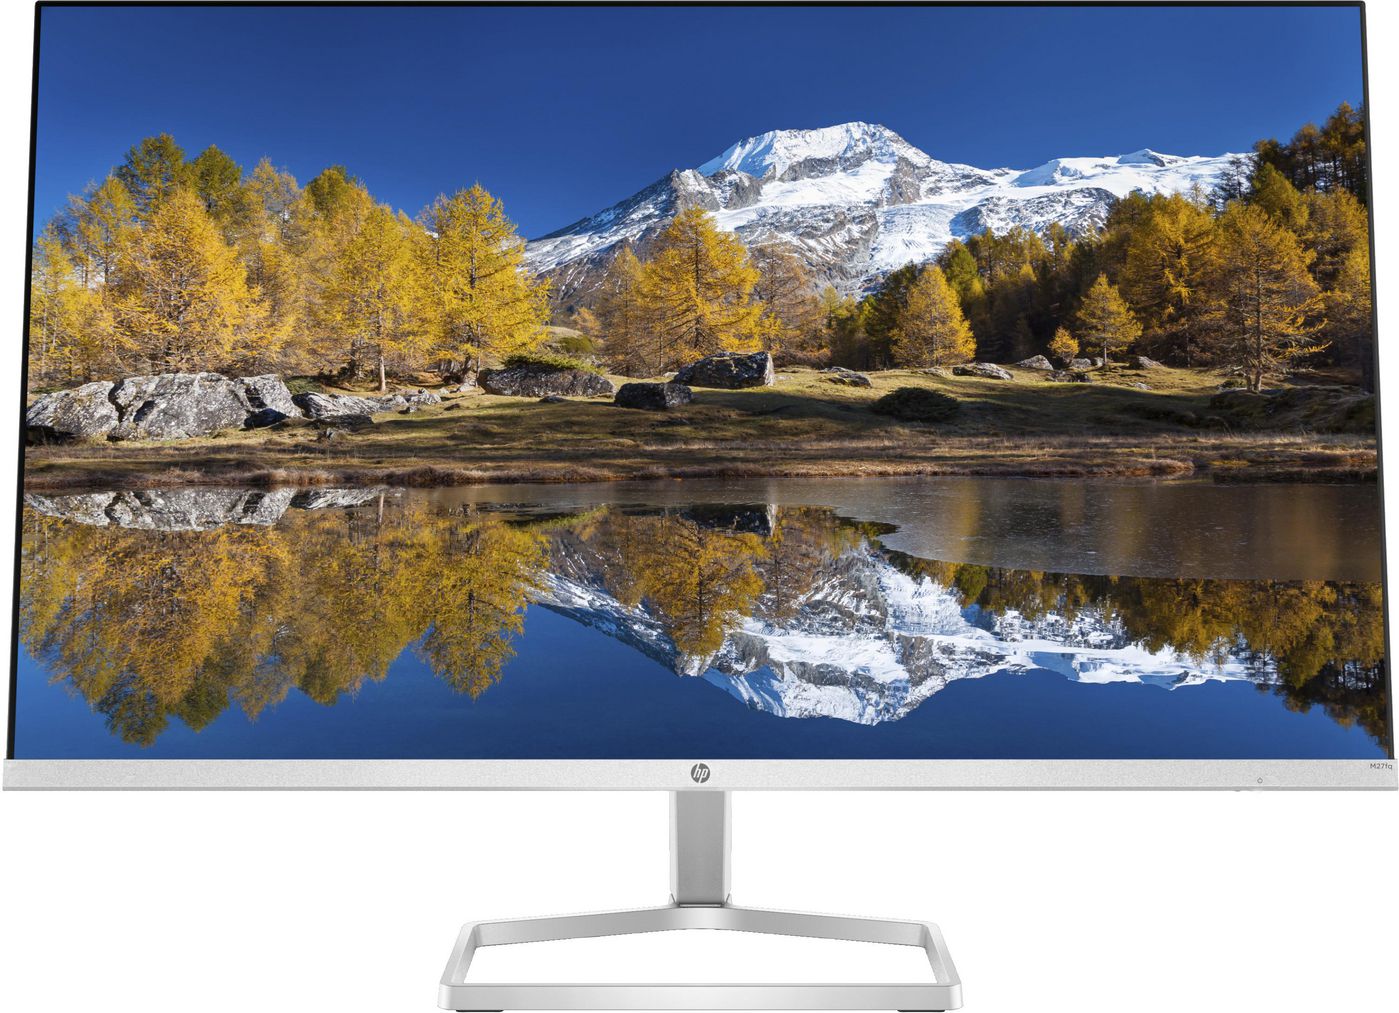 Desktop Monitor - M27fq - 27in - 2560x1440 (QHD) - IPS